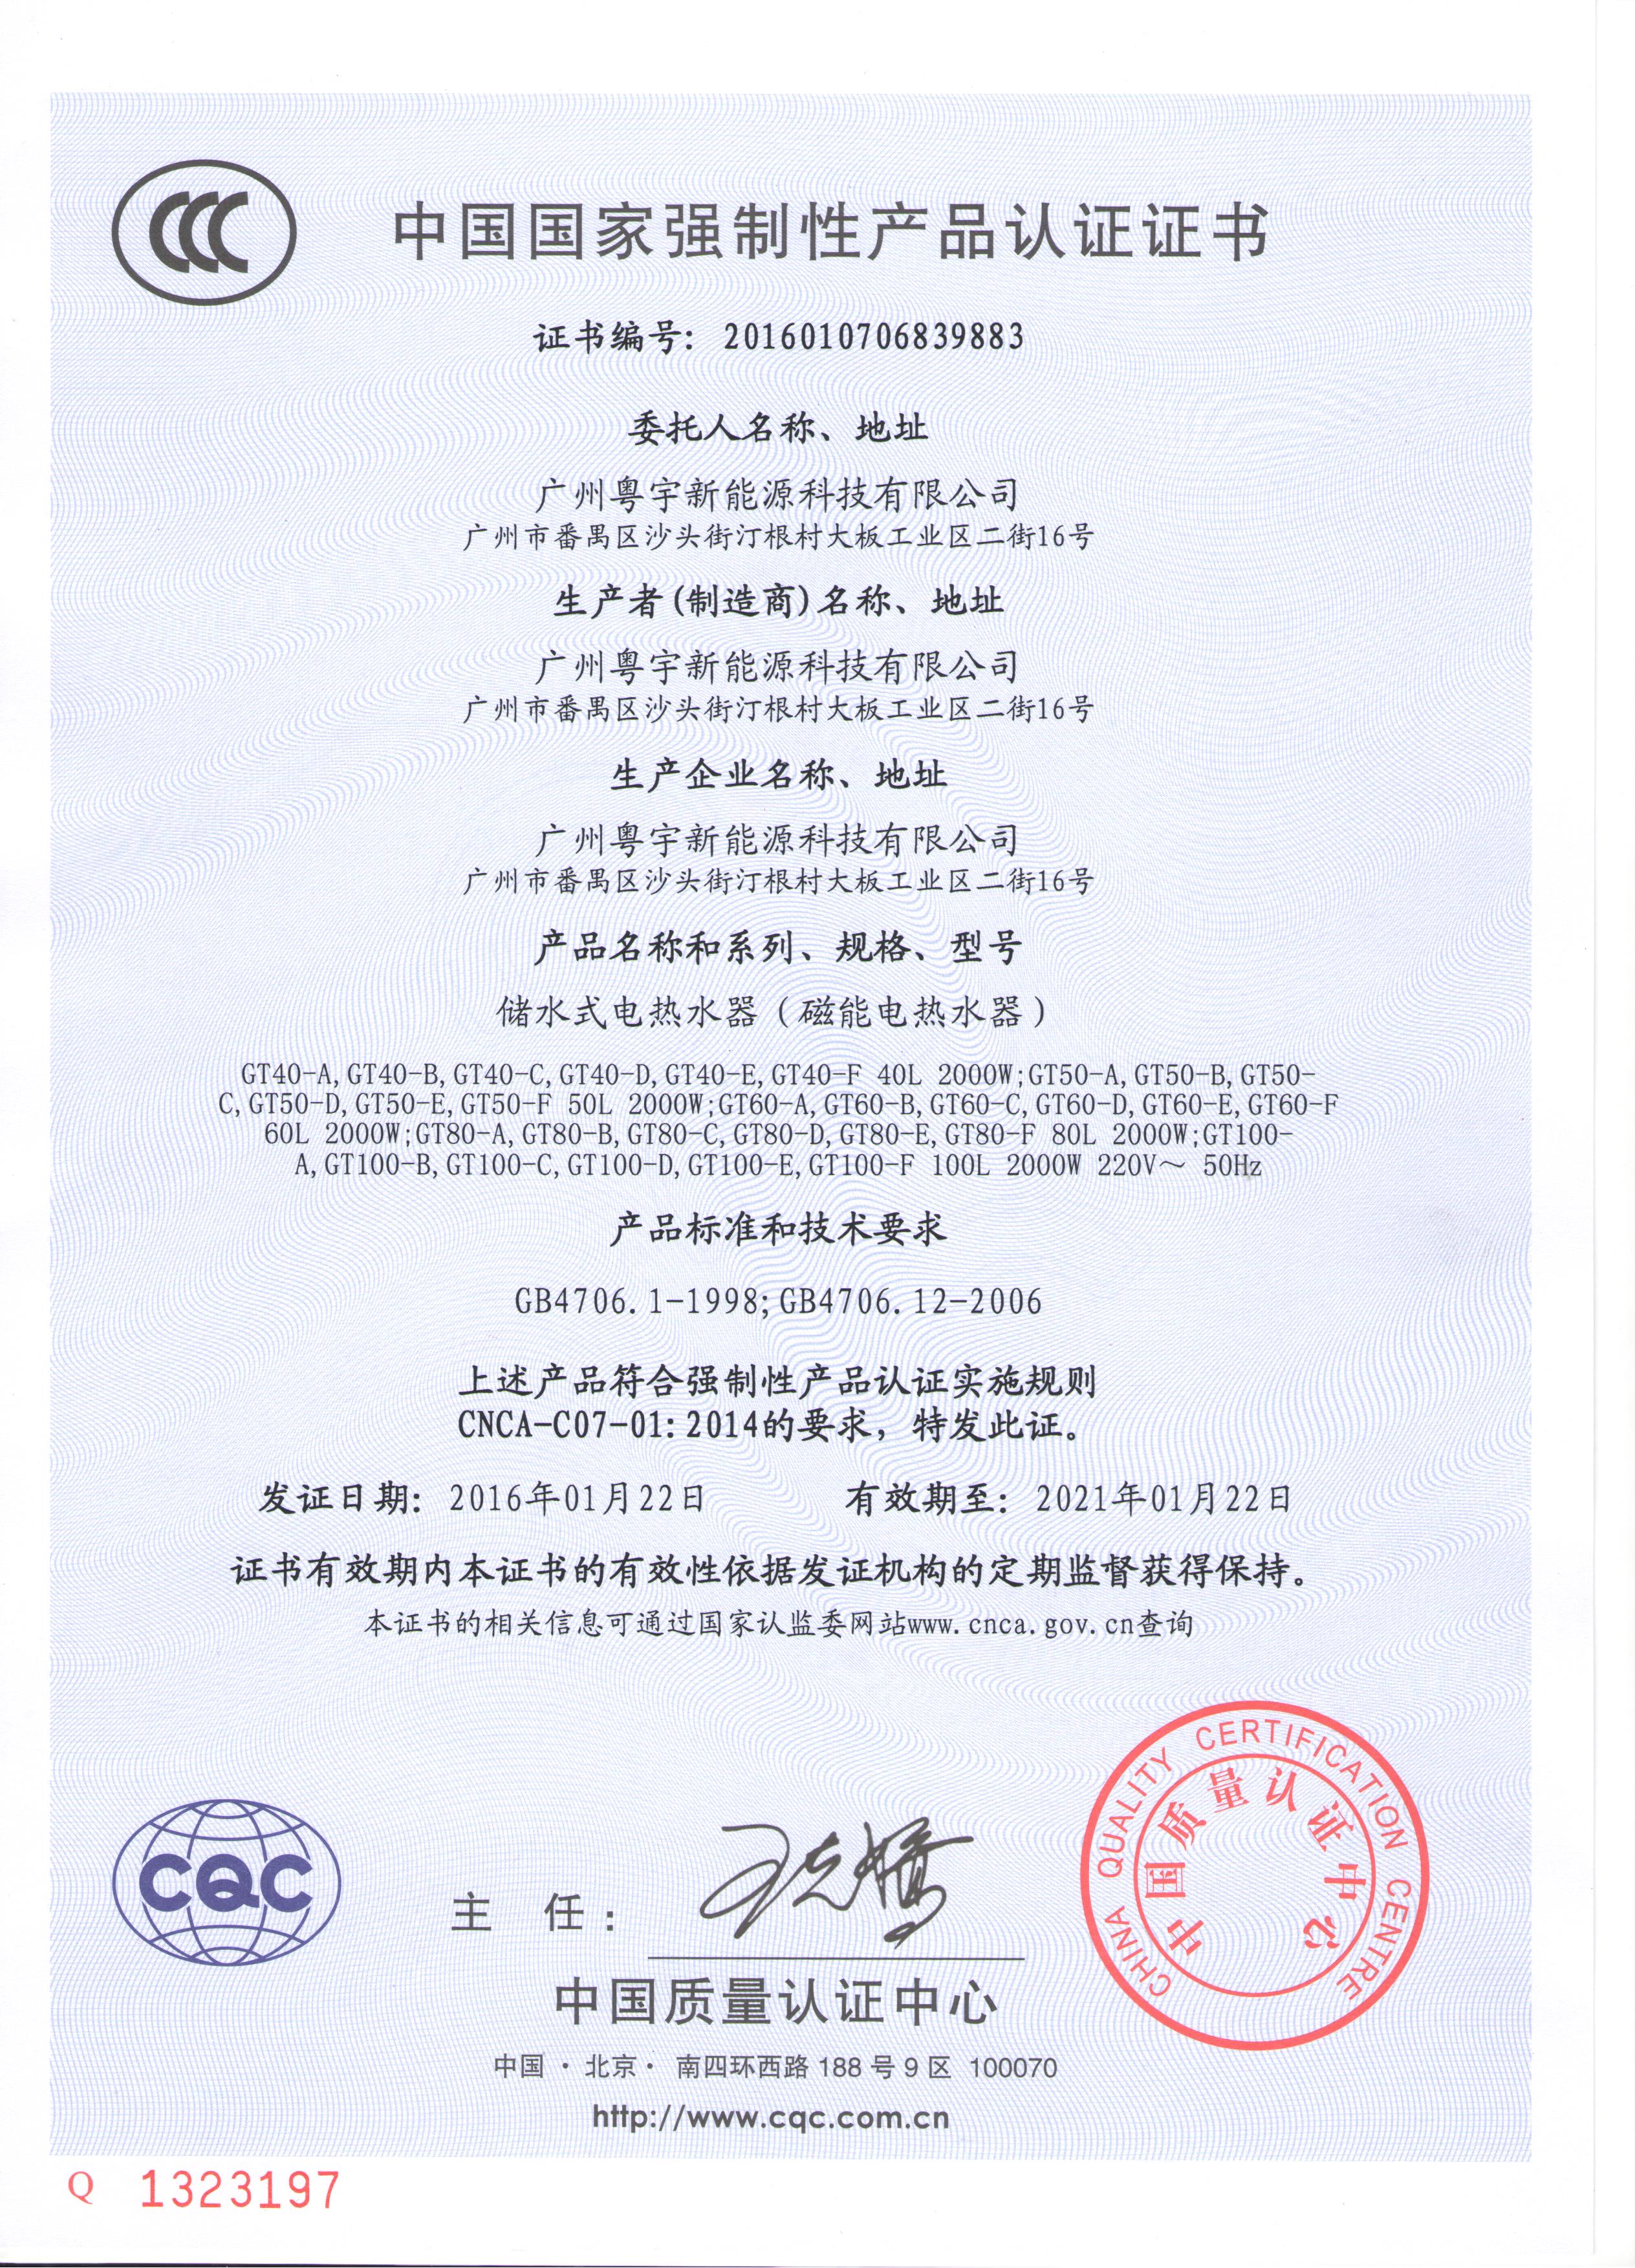 粤宇磁能CCC证书（中文版） .jpg